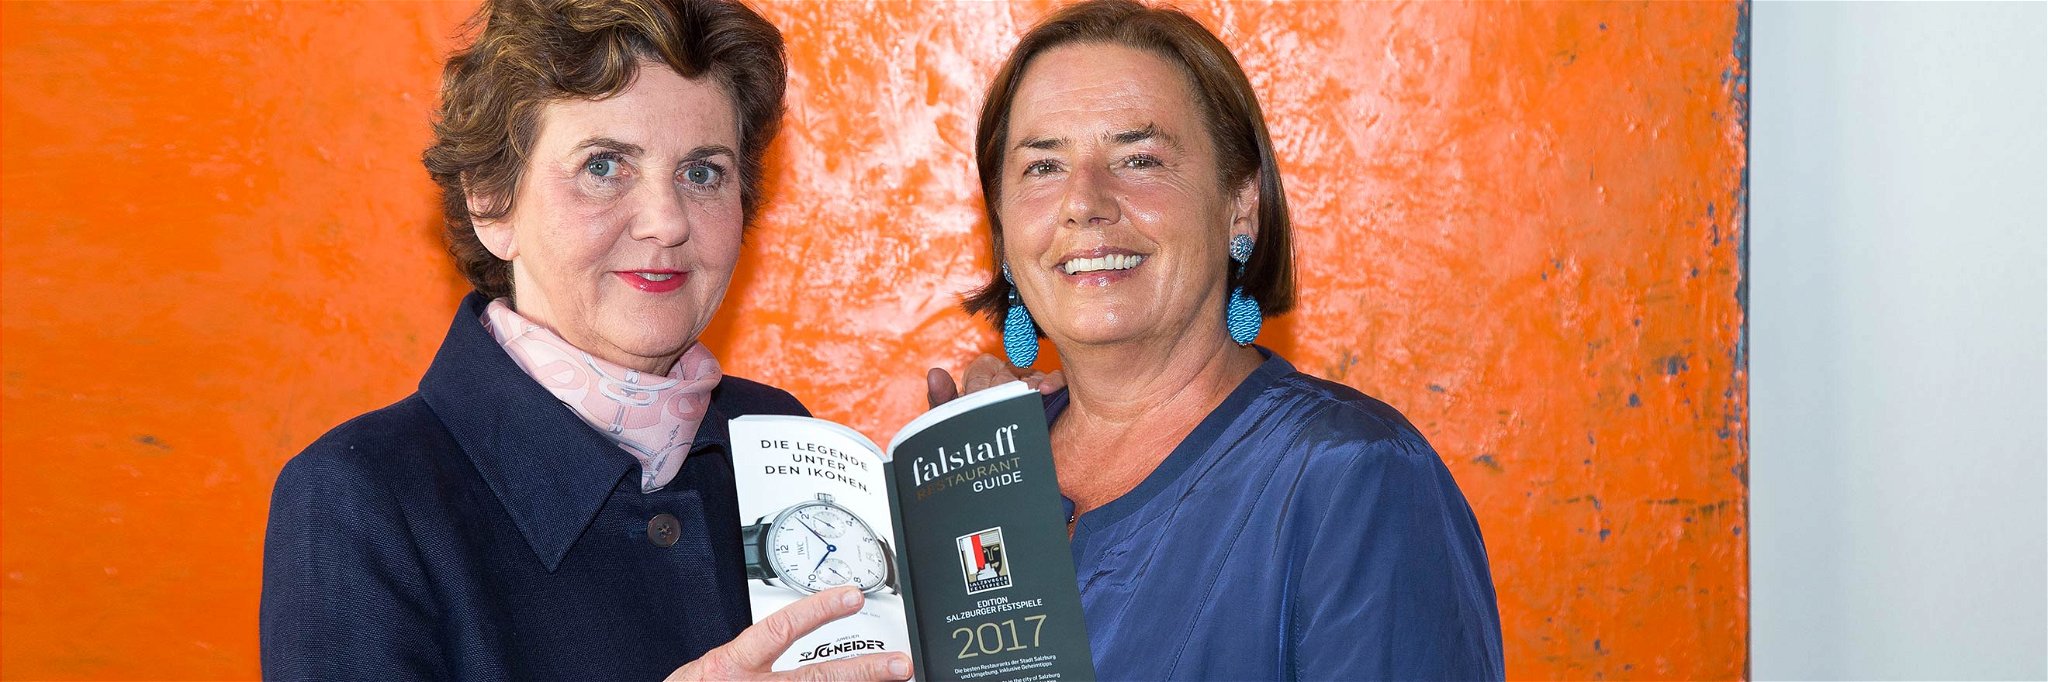 Festspielpräsidentin Helga Rabl-Stadler und Ilse Fischer, Chefredakteurin Falstaff Restaurantguide Edition Salzburger Festspiele.